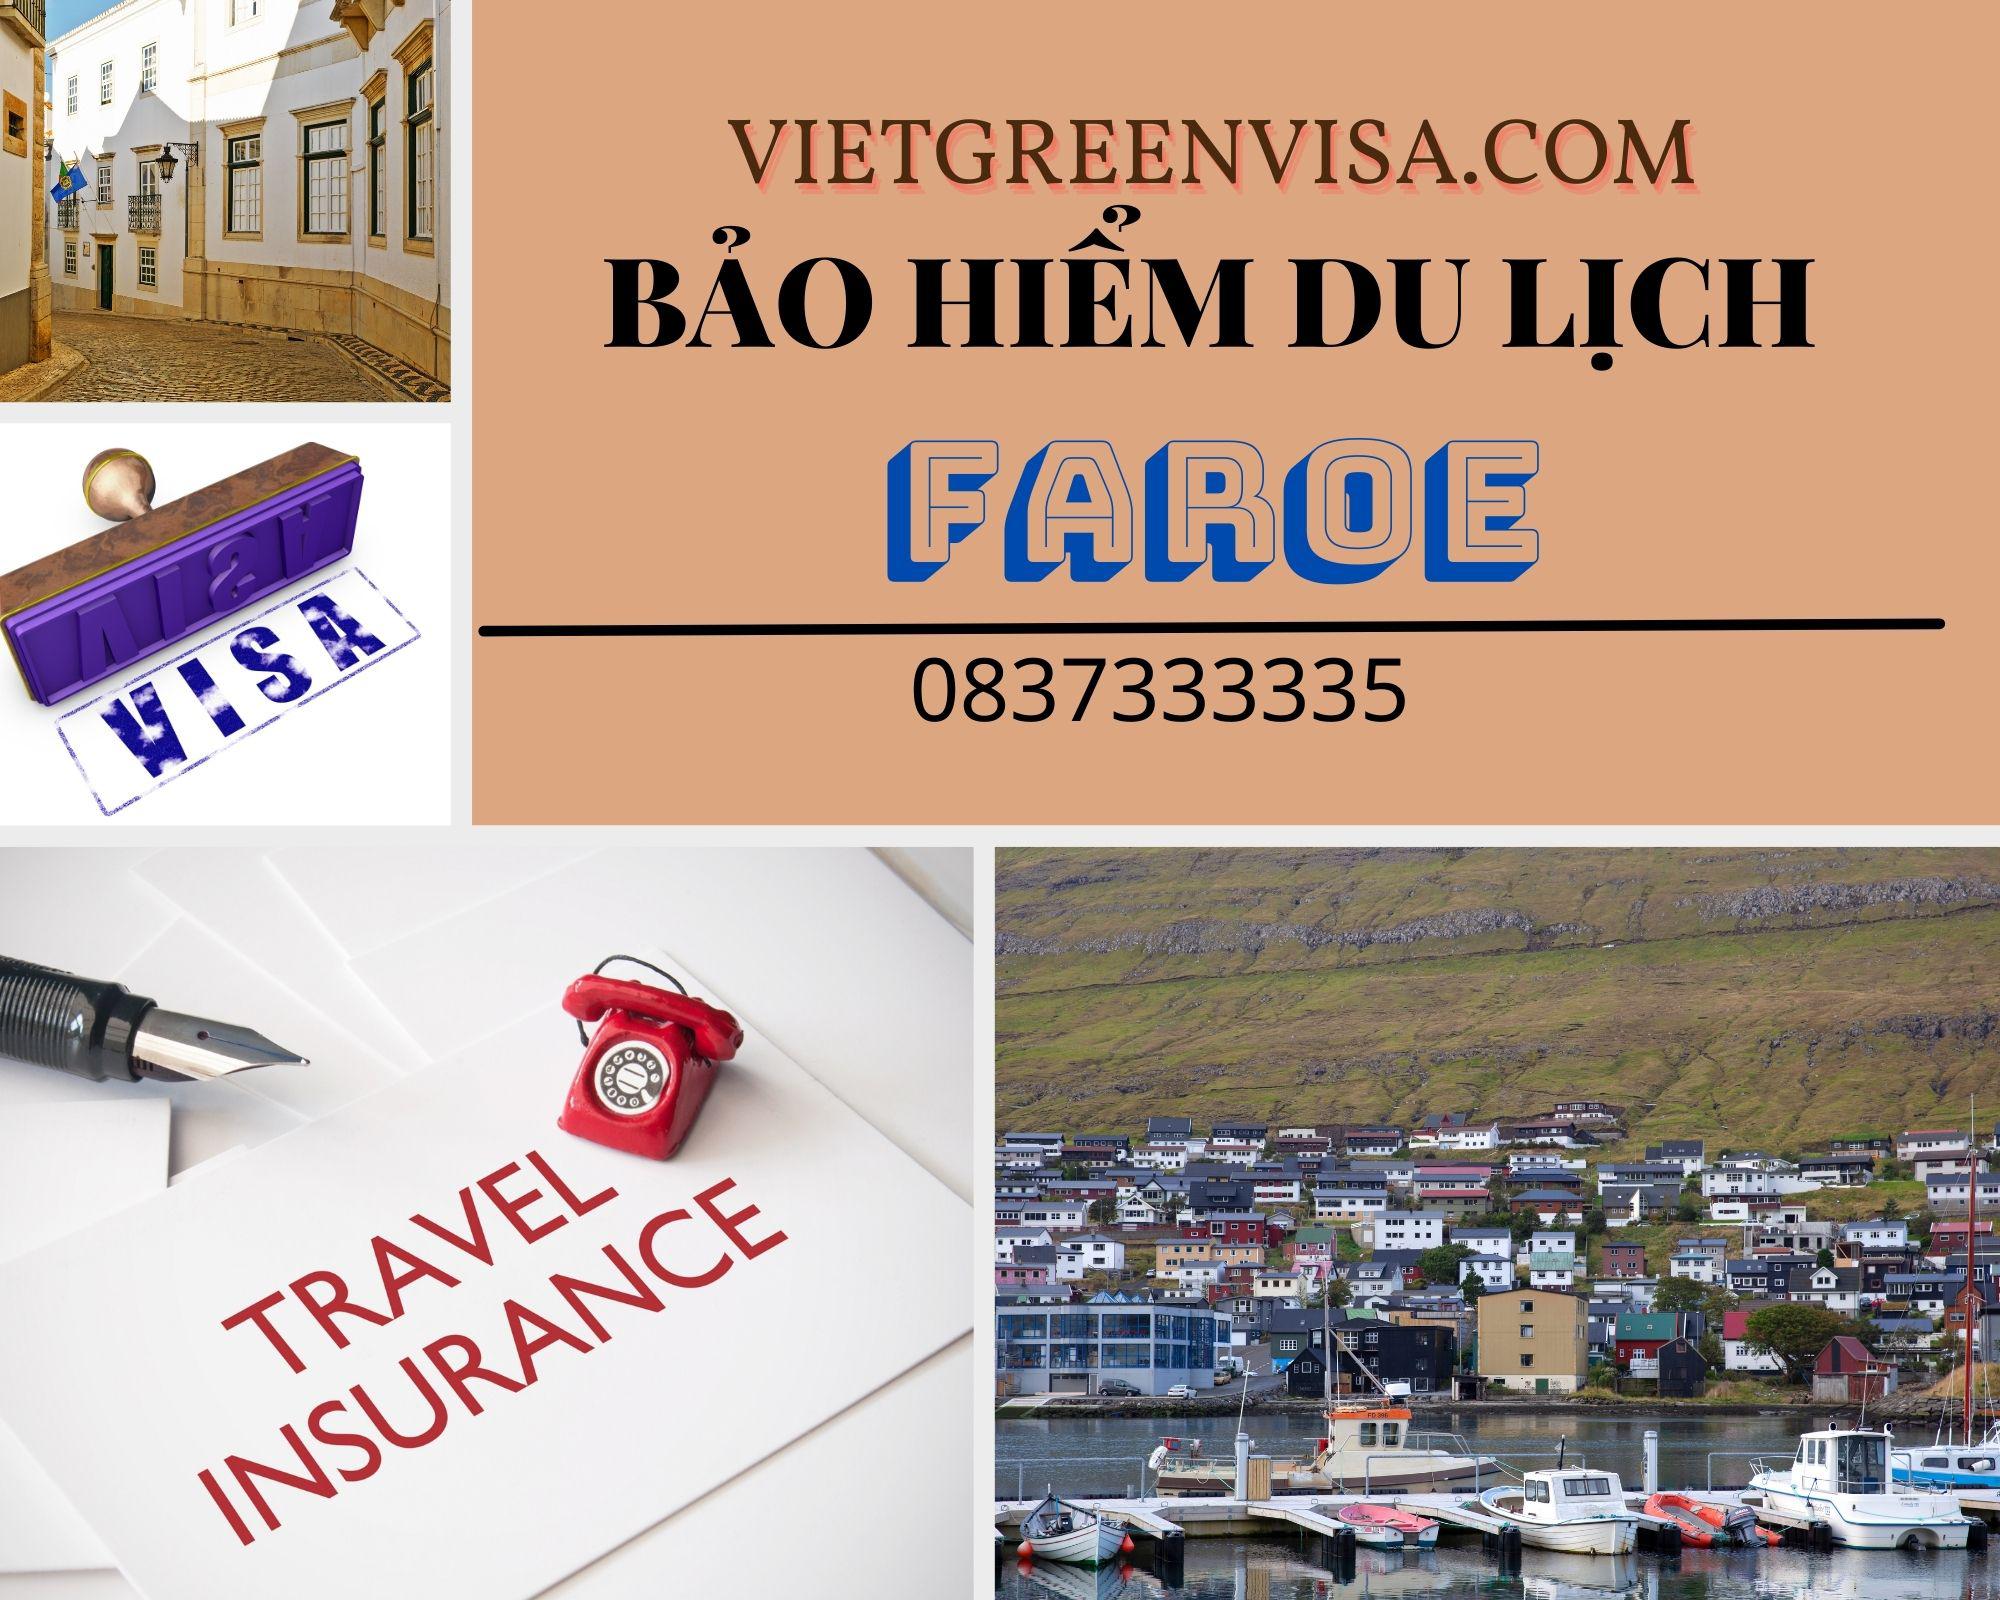 Đại lý bảo hiểm du lịch xin visa Faroe giá rẻ nhất